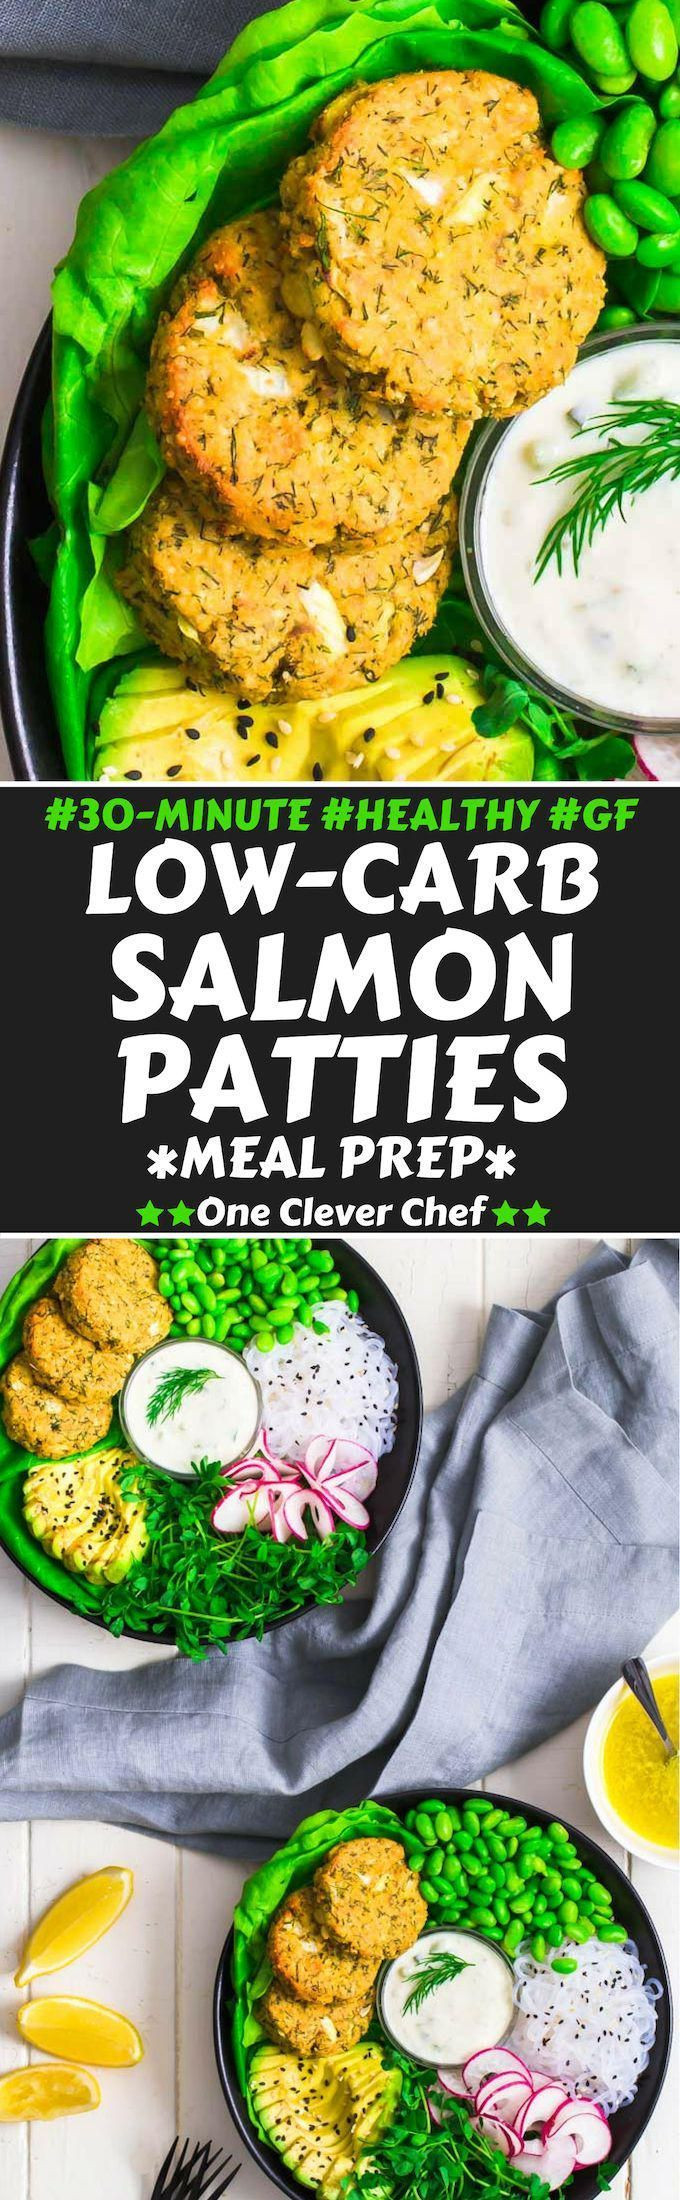 Low Calorie Salmon Patties
 Low Carb Salmon Patties Recipe